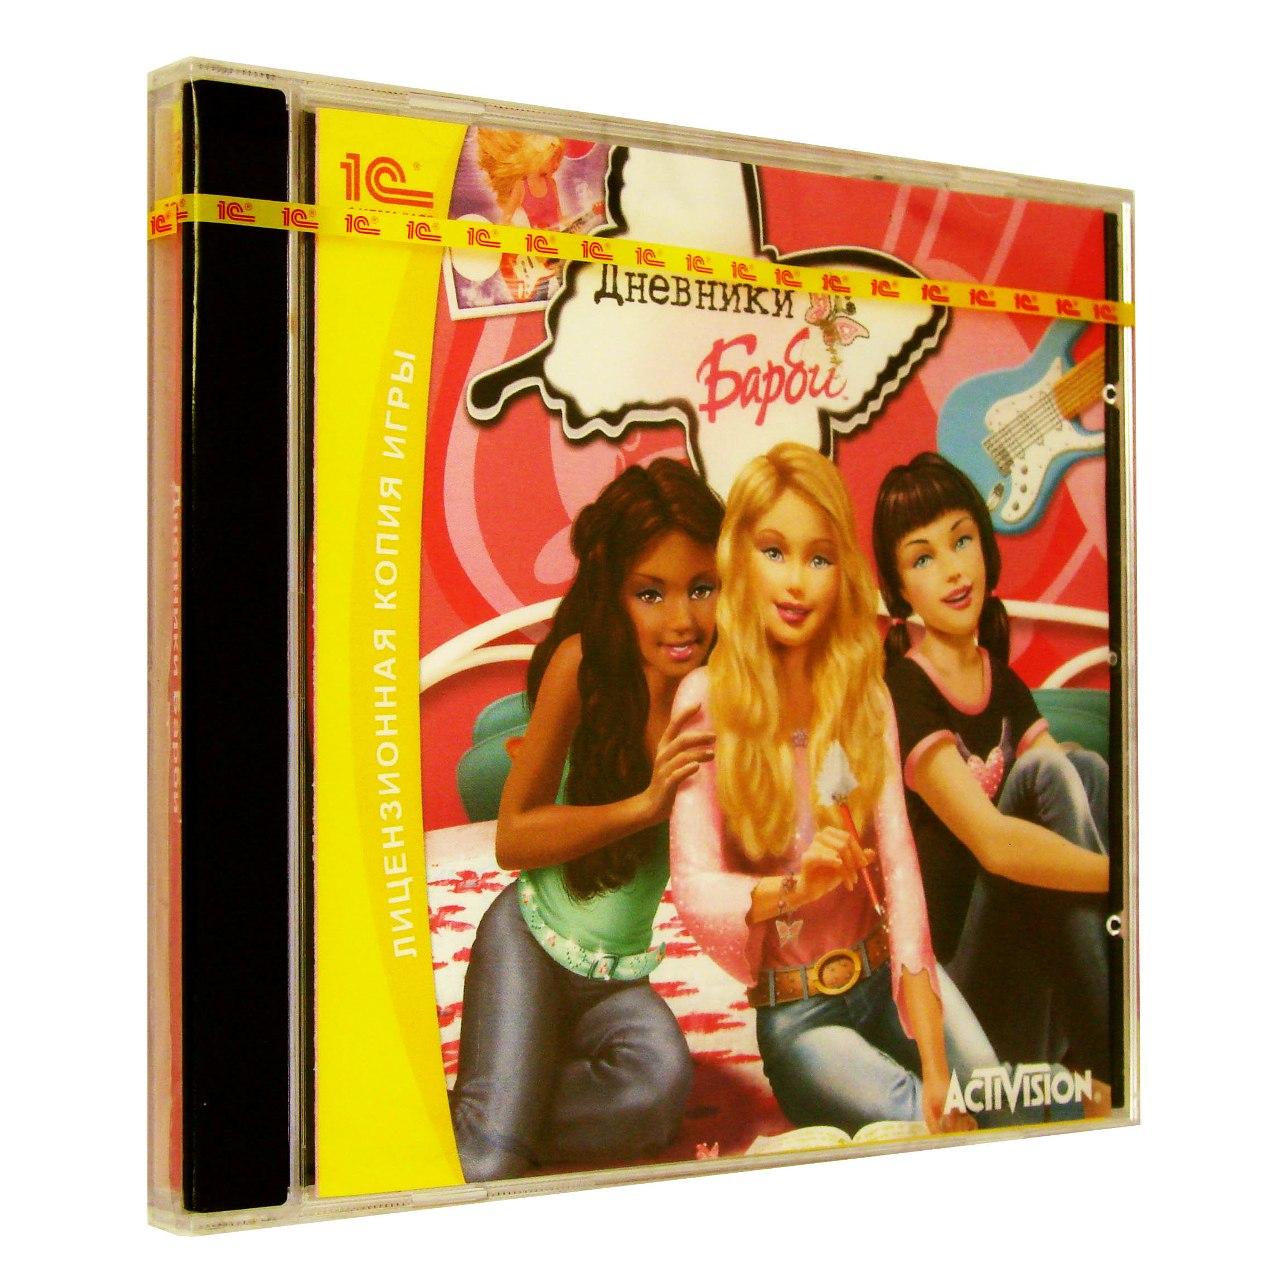 Компьютерный компакт-диск Barbie: Дневники Барби (ПК), фирма "1С", 1CD